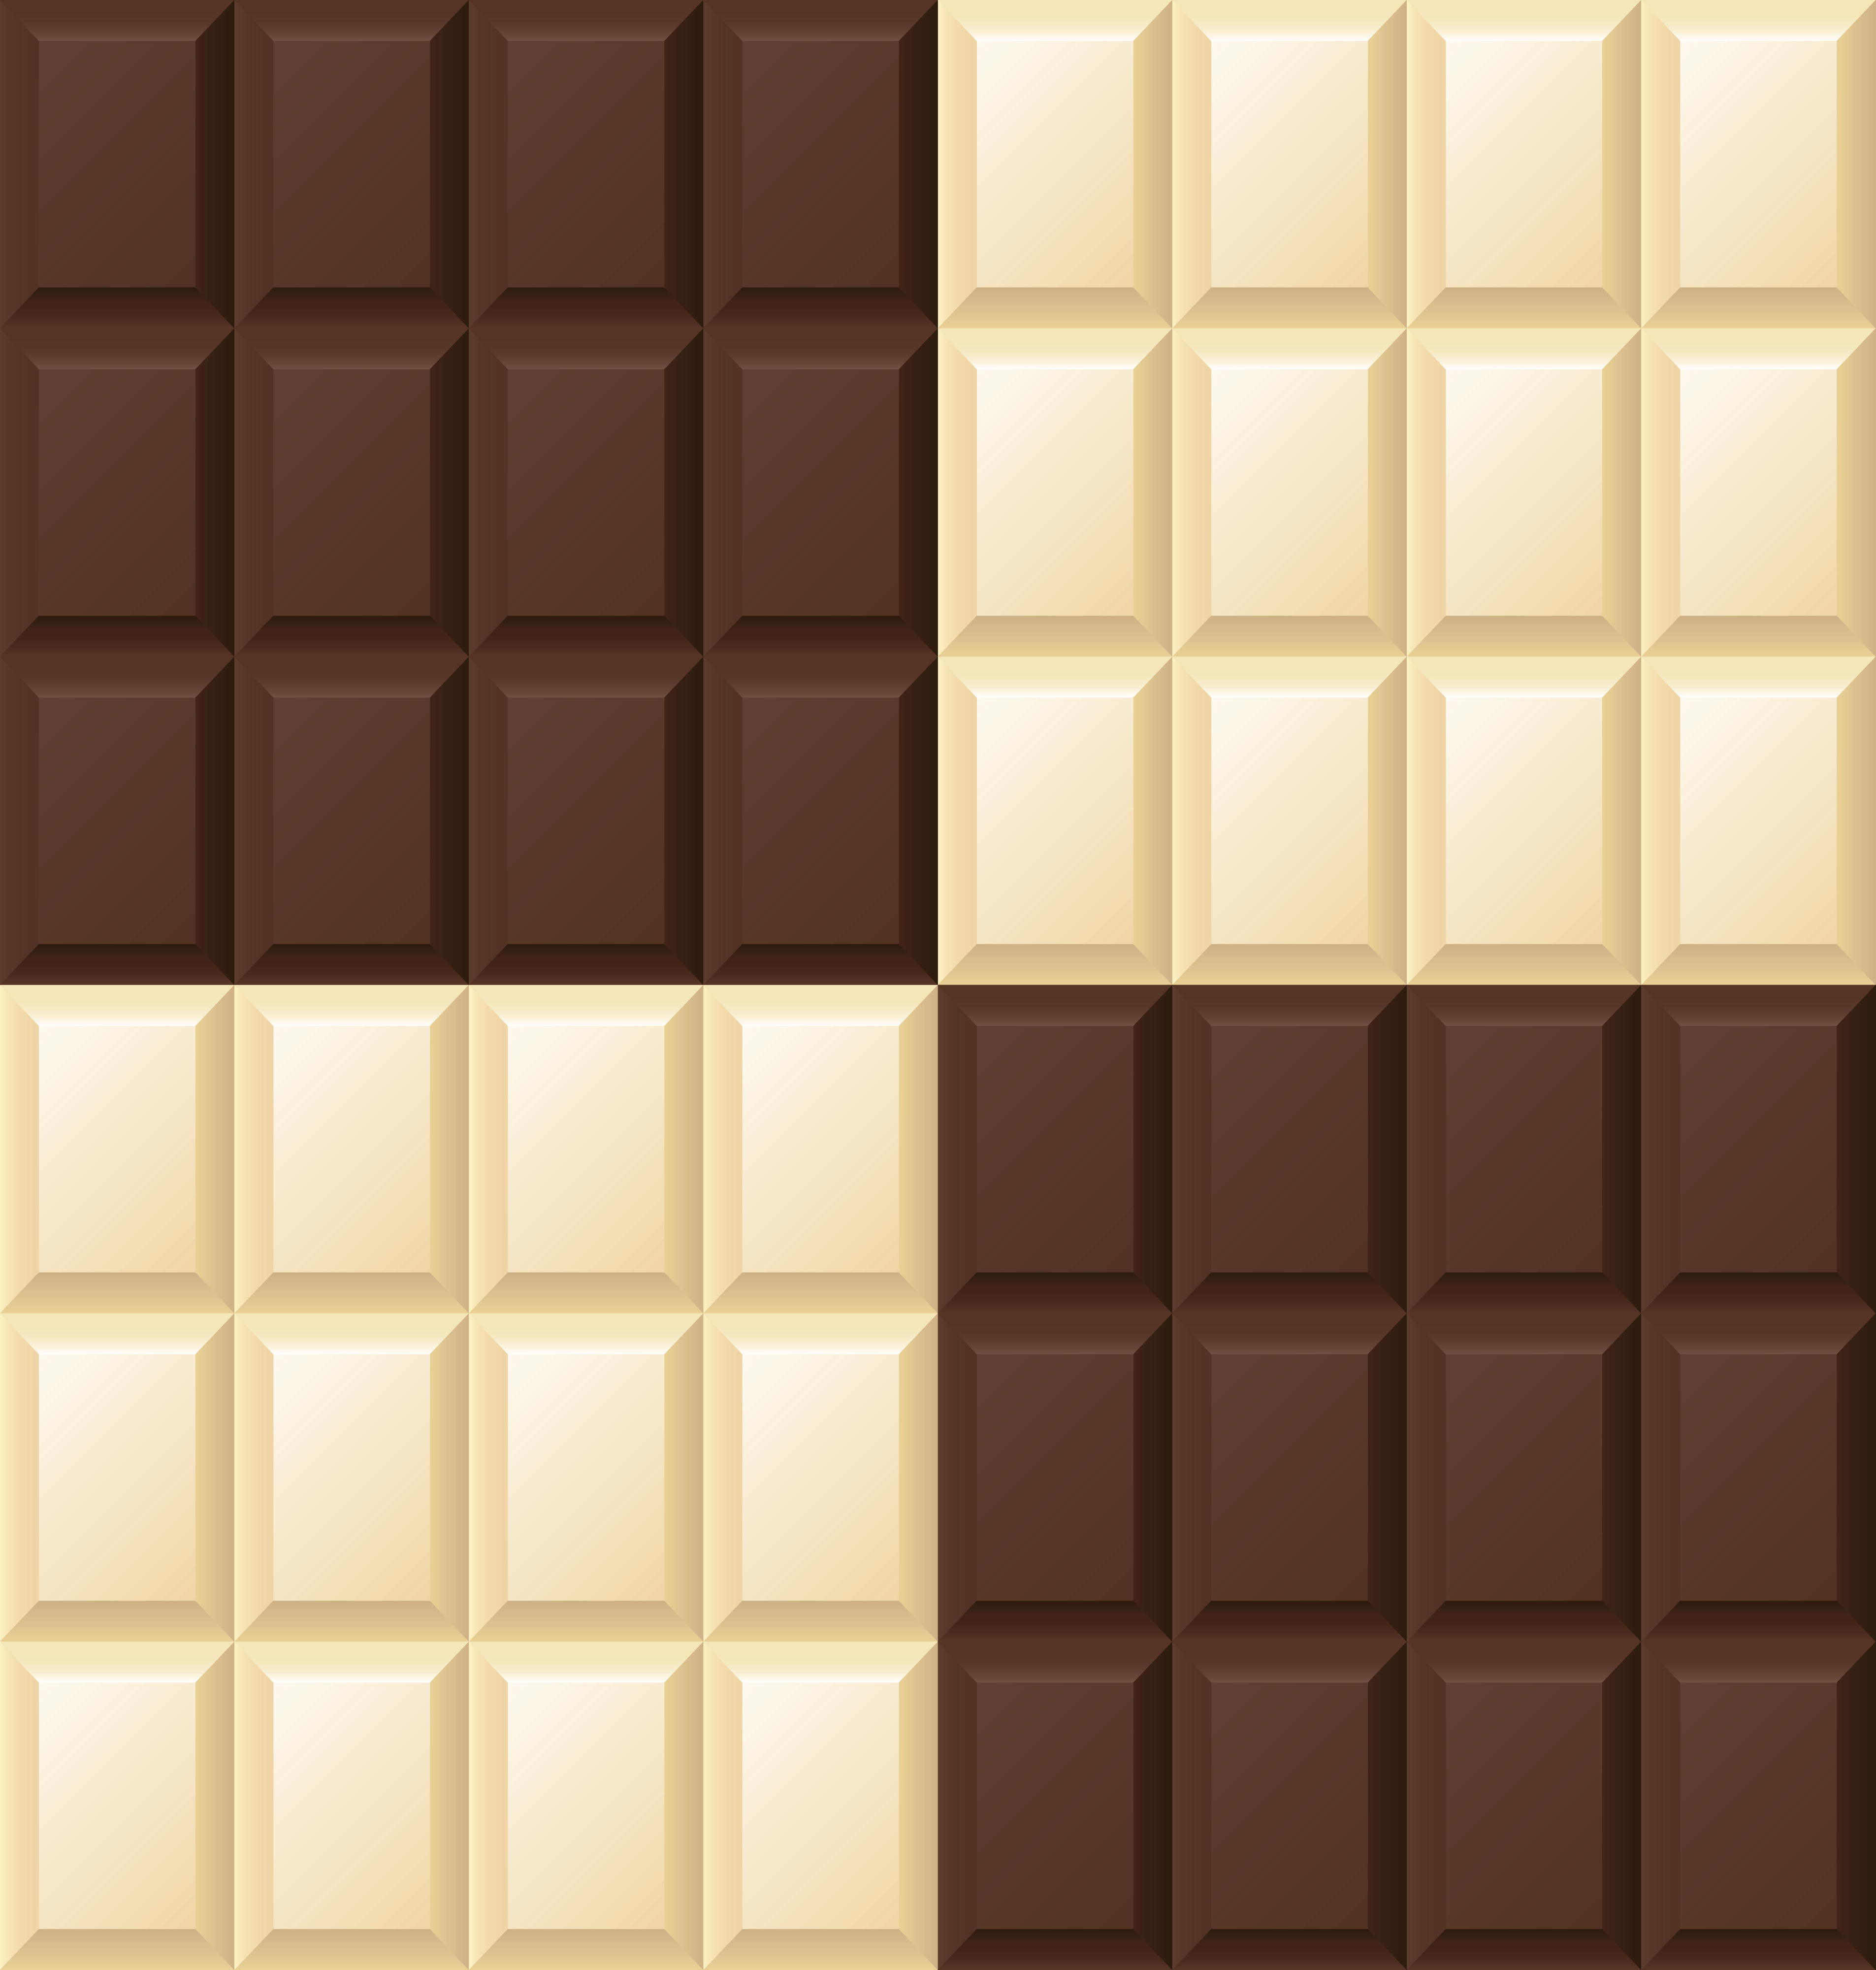 White and Dark Chocolate Bars Background.